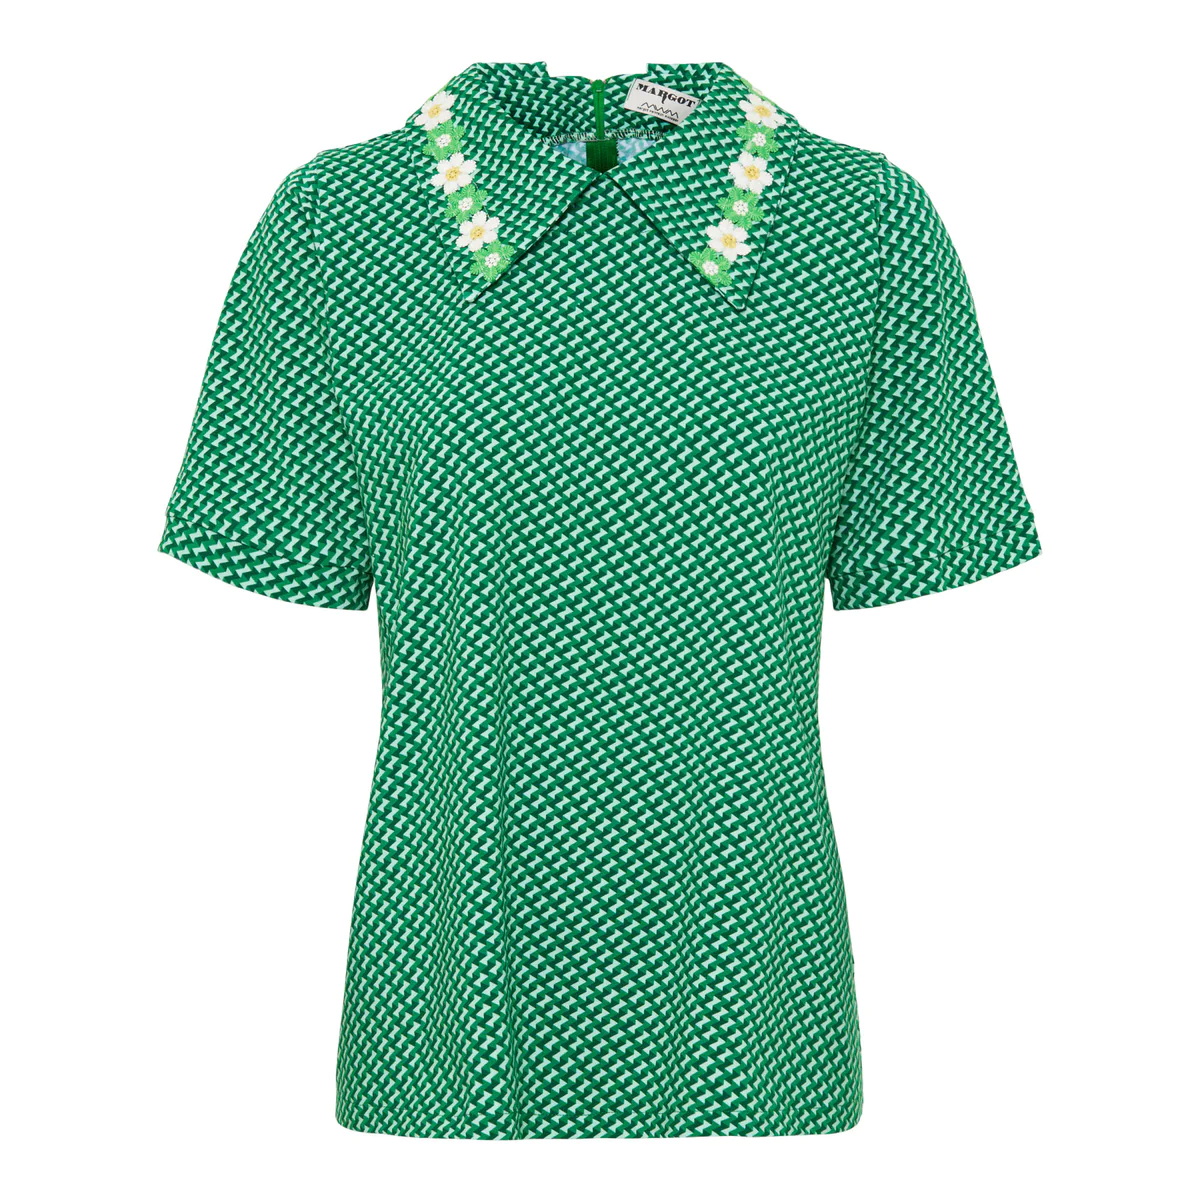 MARGOT Bluse SUNDELION,  Farbe: grün,  MARGOT verrückte Mode aus Dänemark   